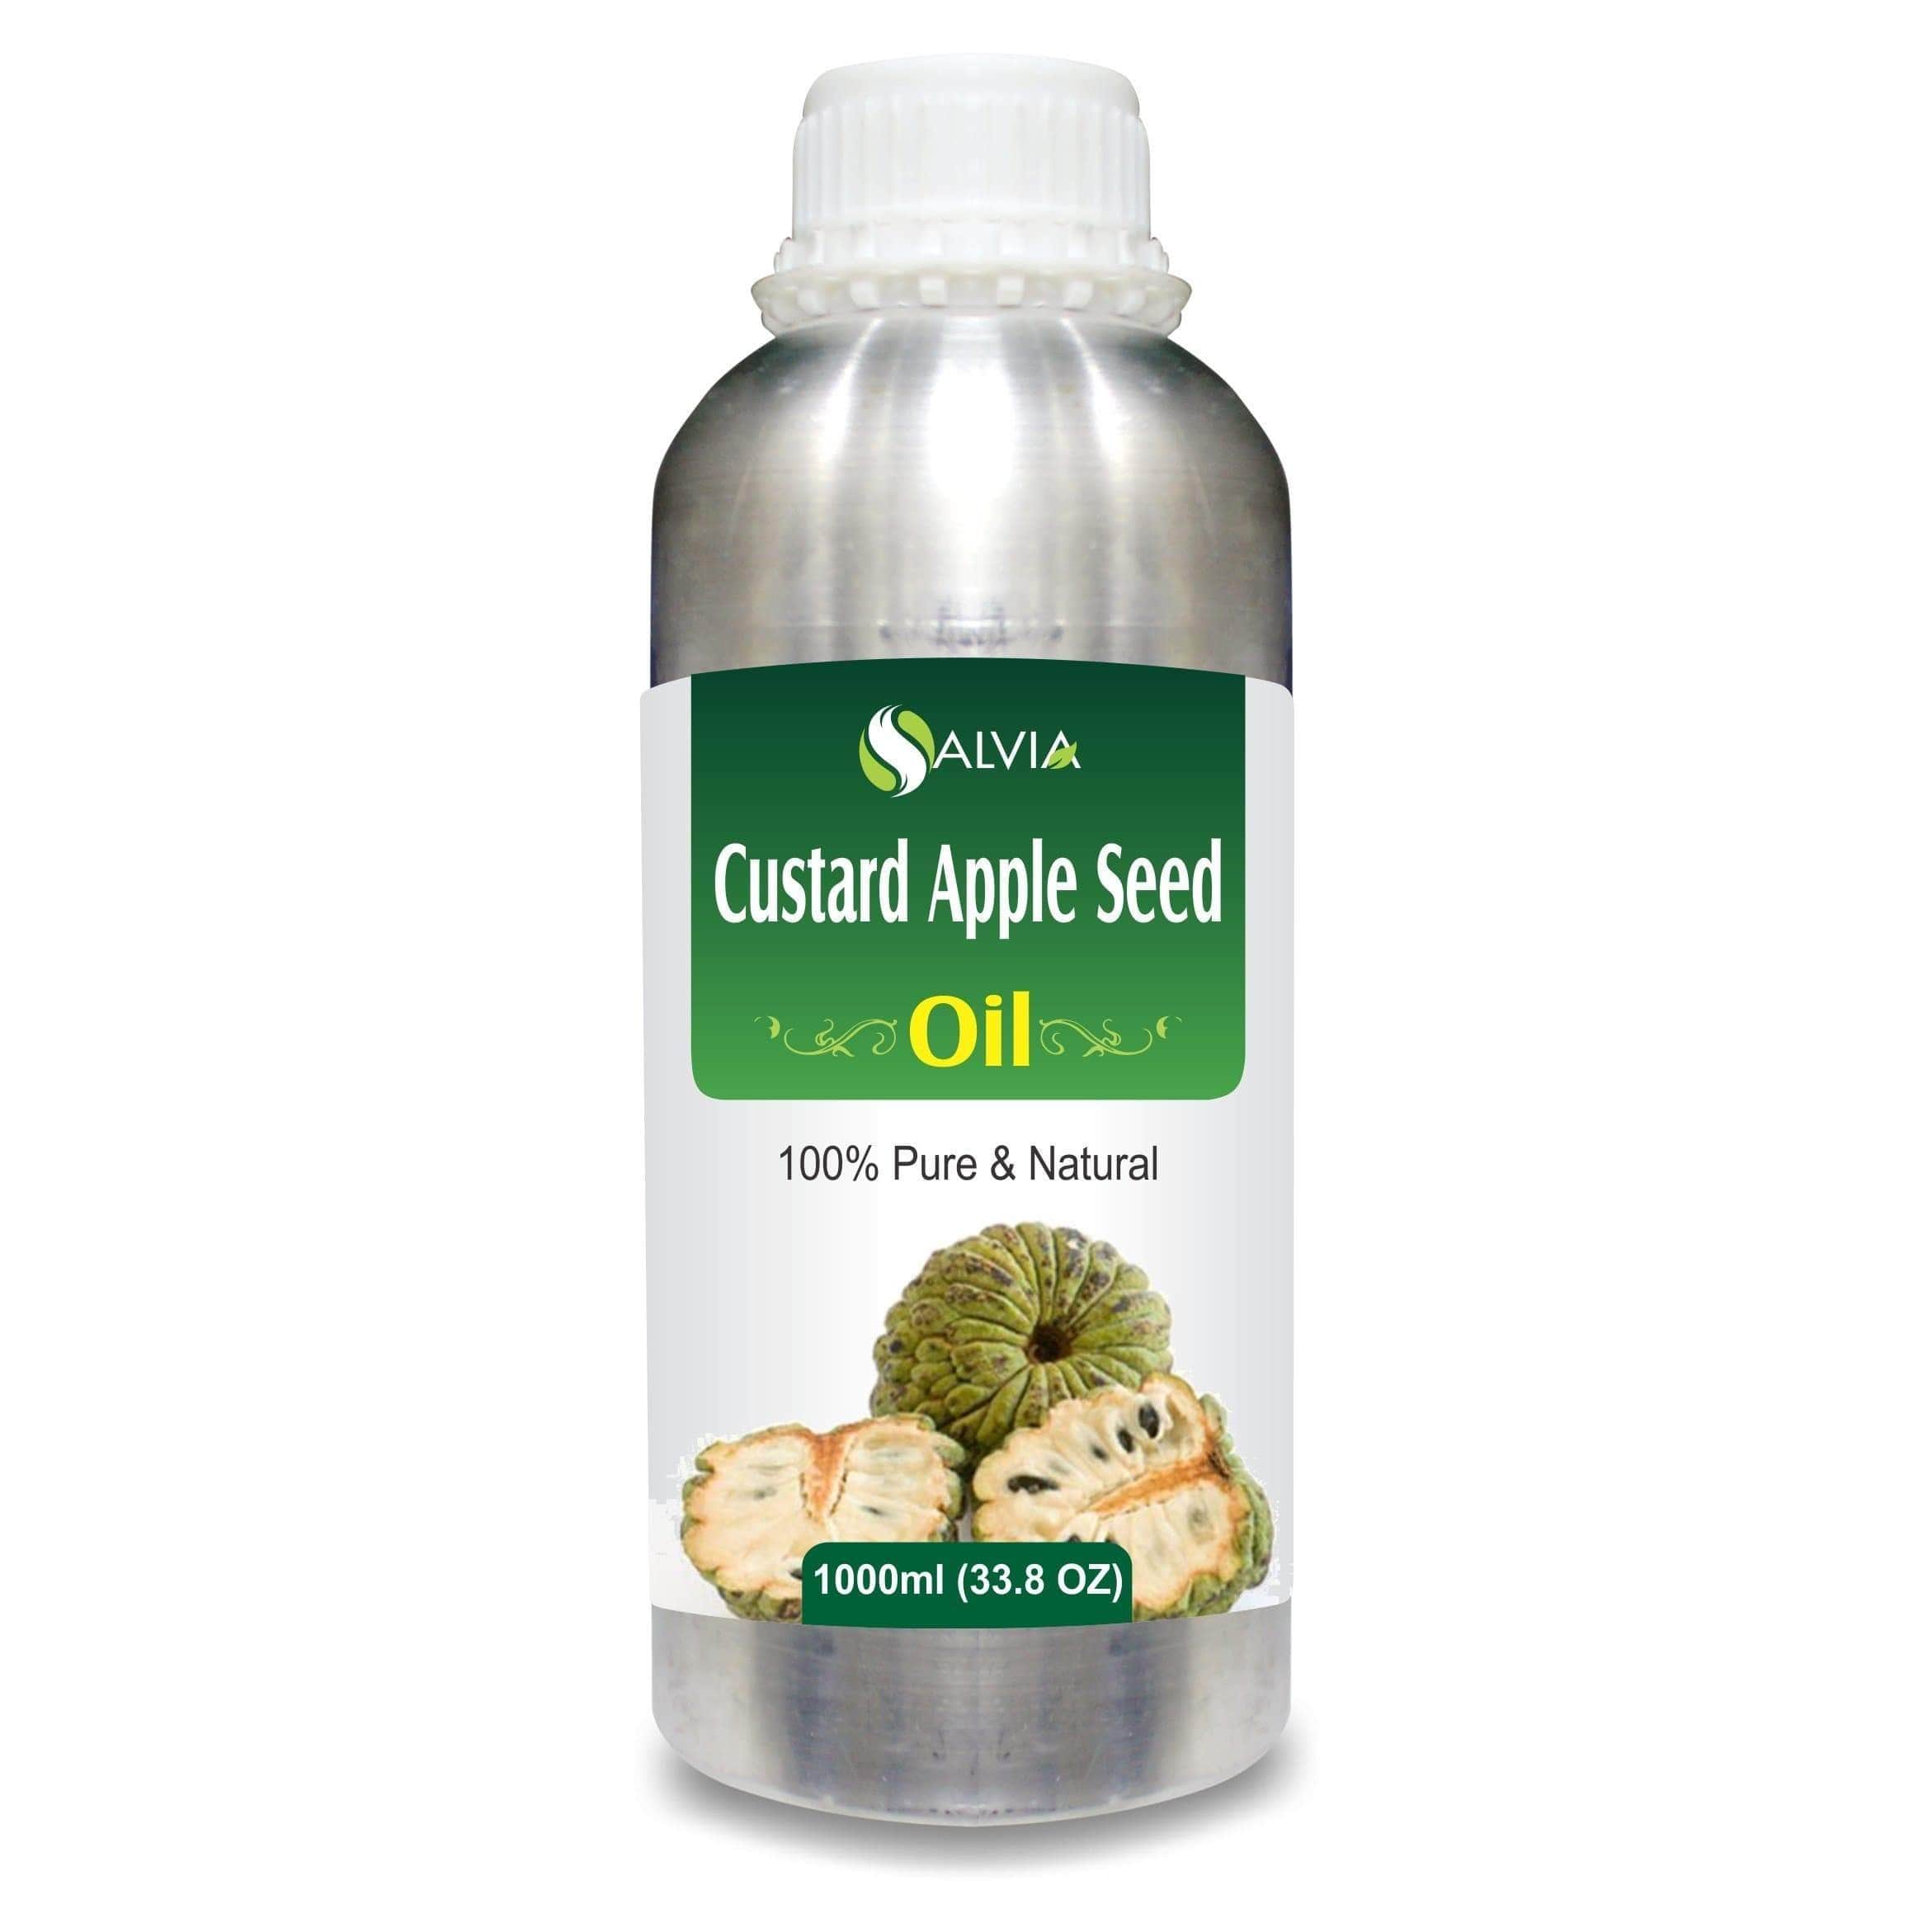 custard apple seed oil for hair